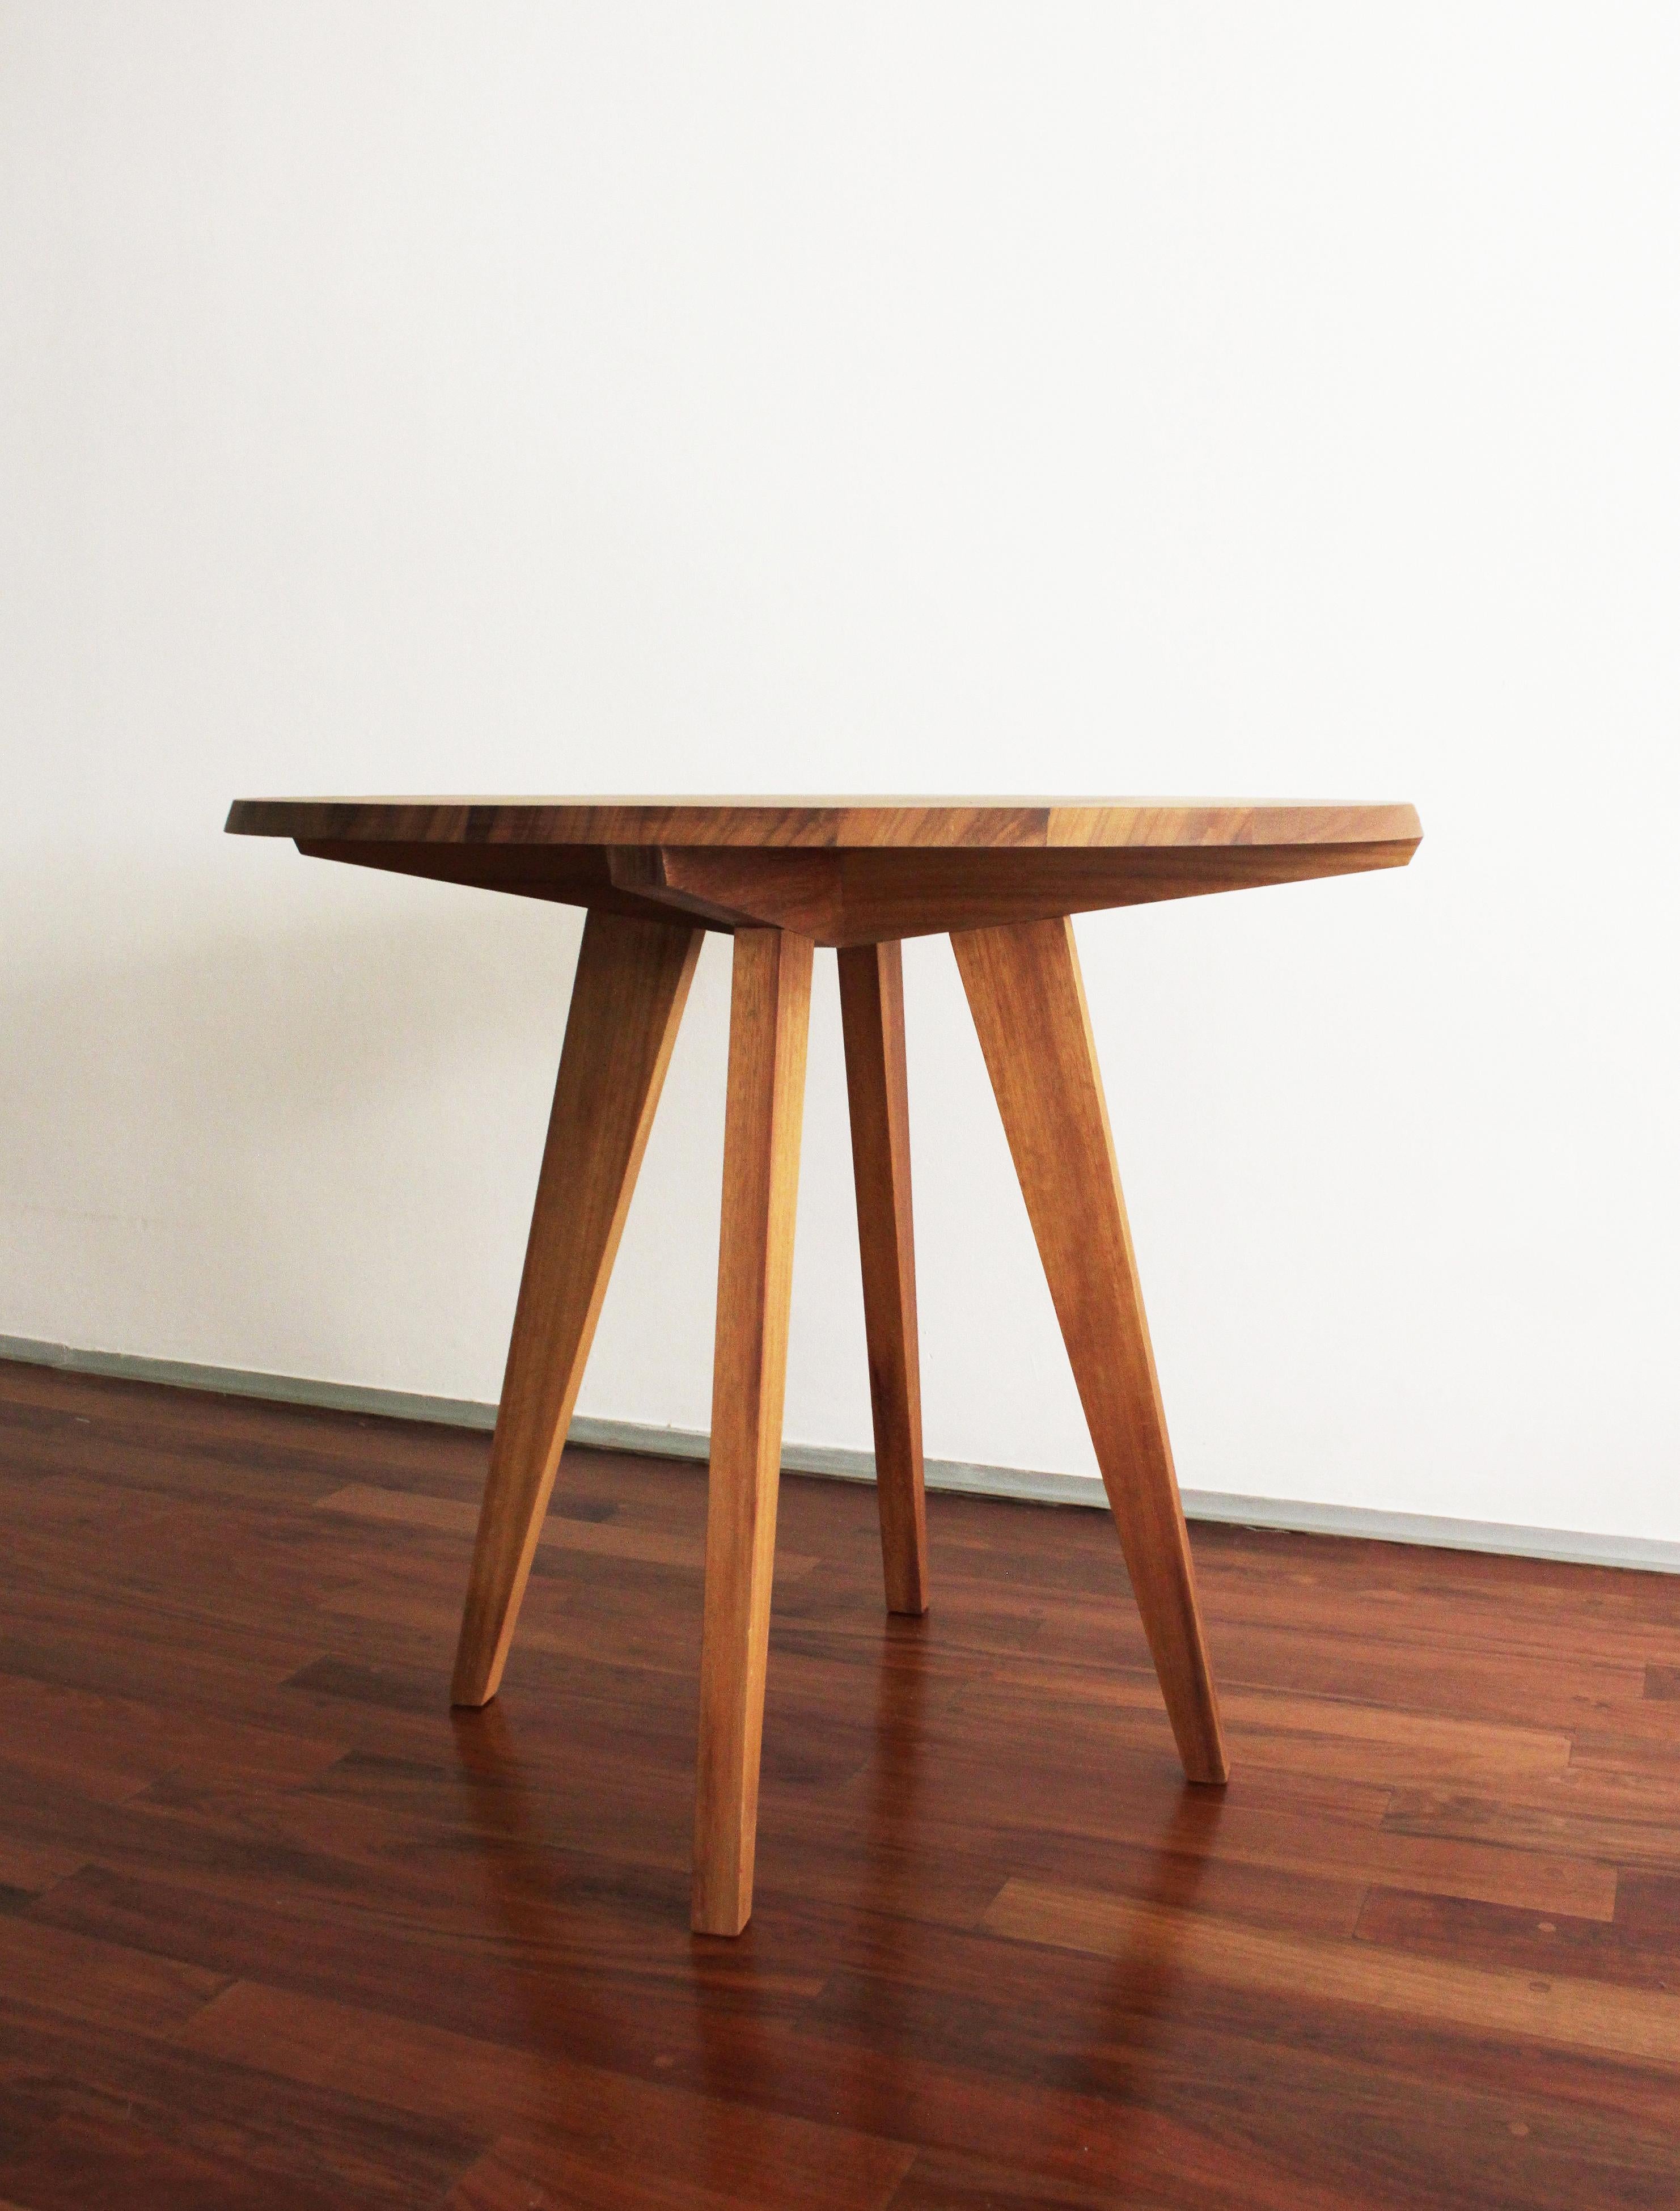 La Jacana Cuadro ist ein zeitgenössischer, hoher Tisch aus massivem Tzalamholz in der Größe 90 x 76 cm.

Vollständige Abmessungen: B 90 x H 75 x T 90 cm

La Jacana Cuadro ist individuell anpassbar und in verschiedenen Größen und Materialien